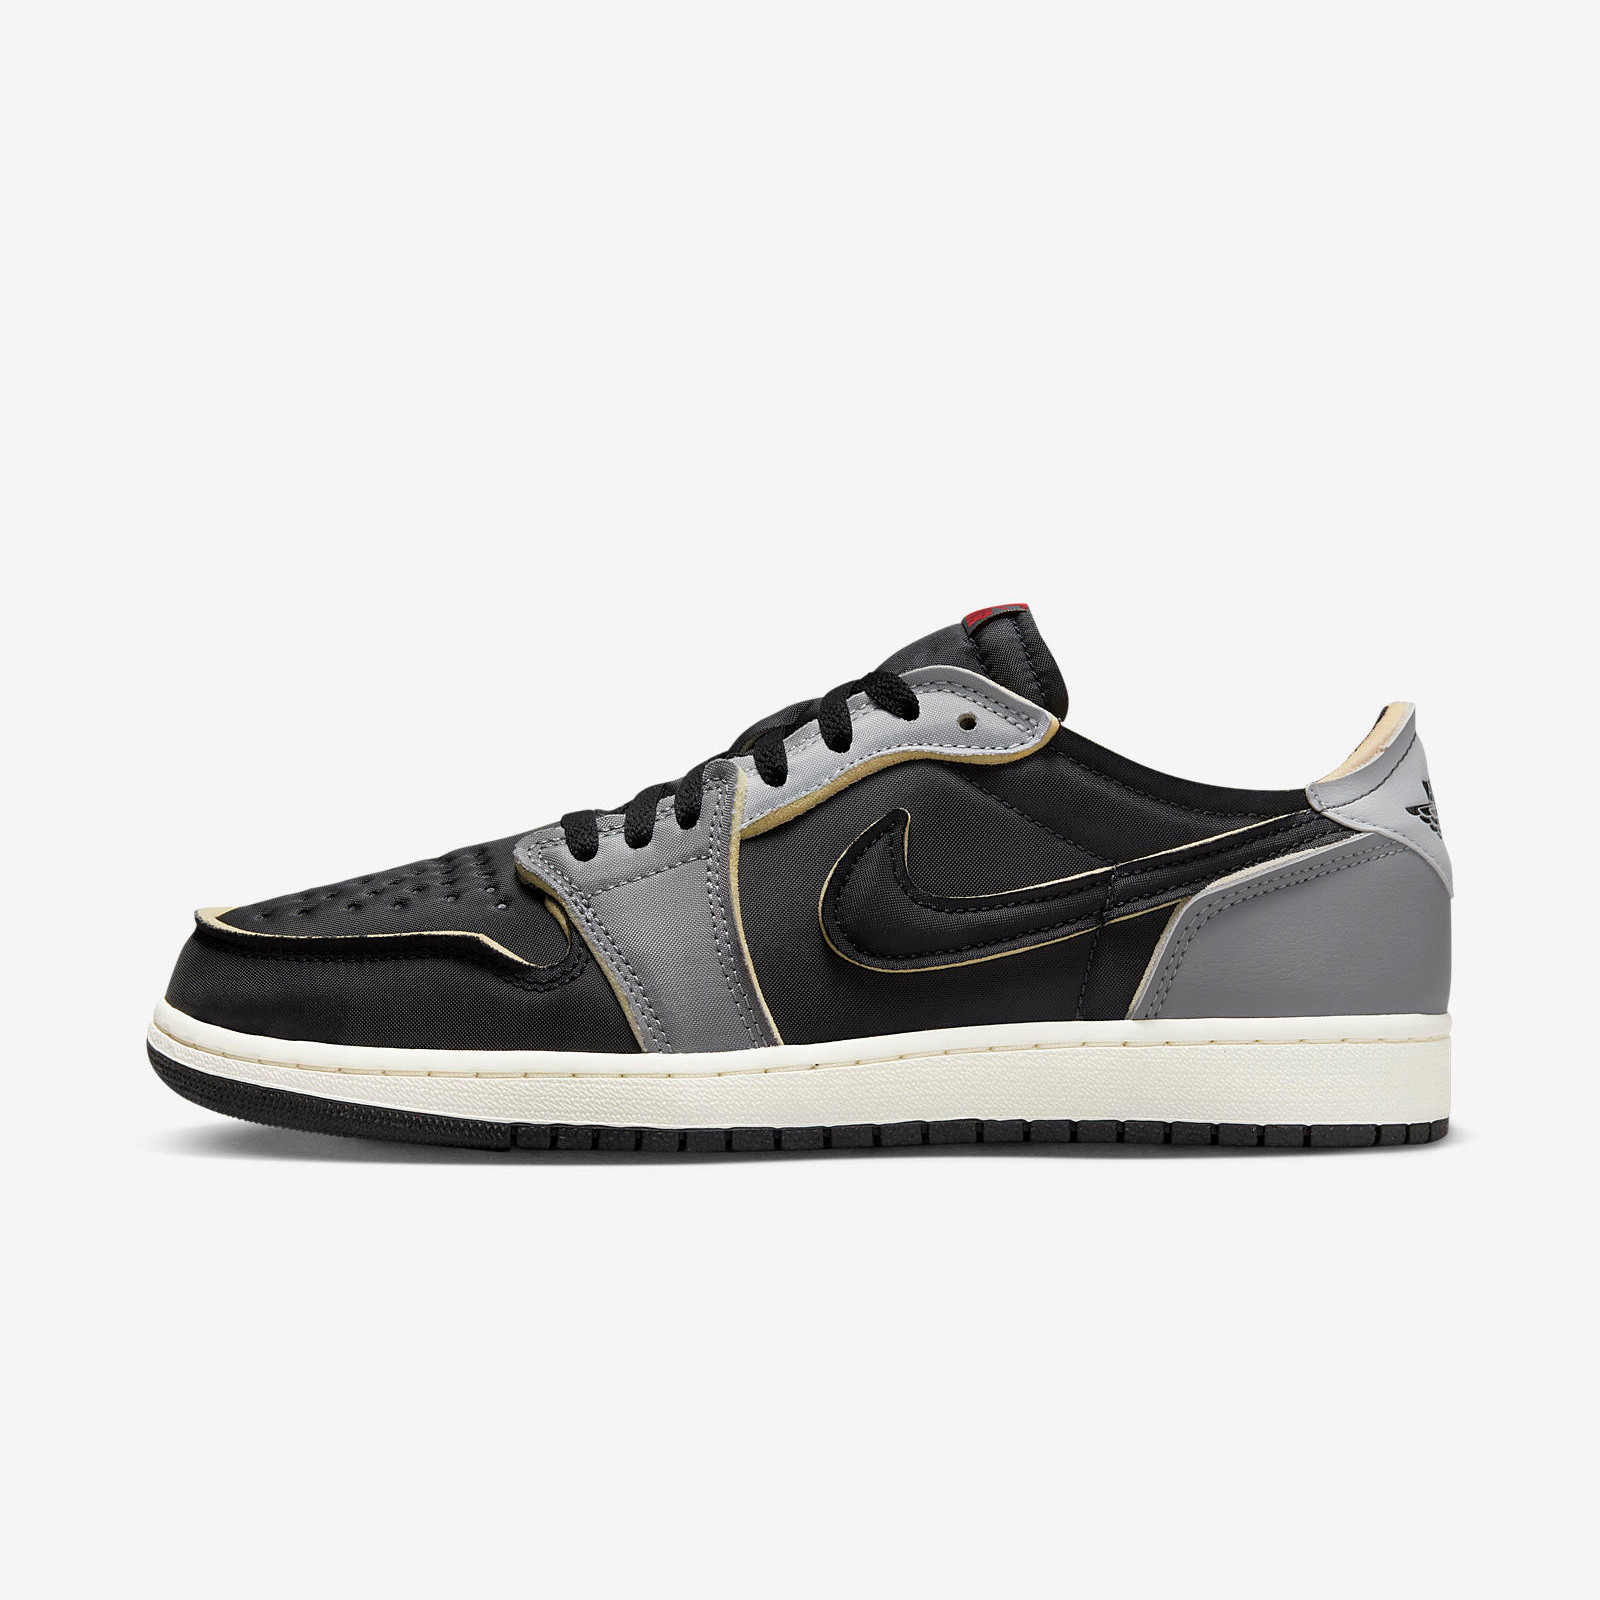 Air Jordan 1 Low
Black / Grey